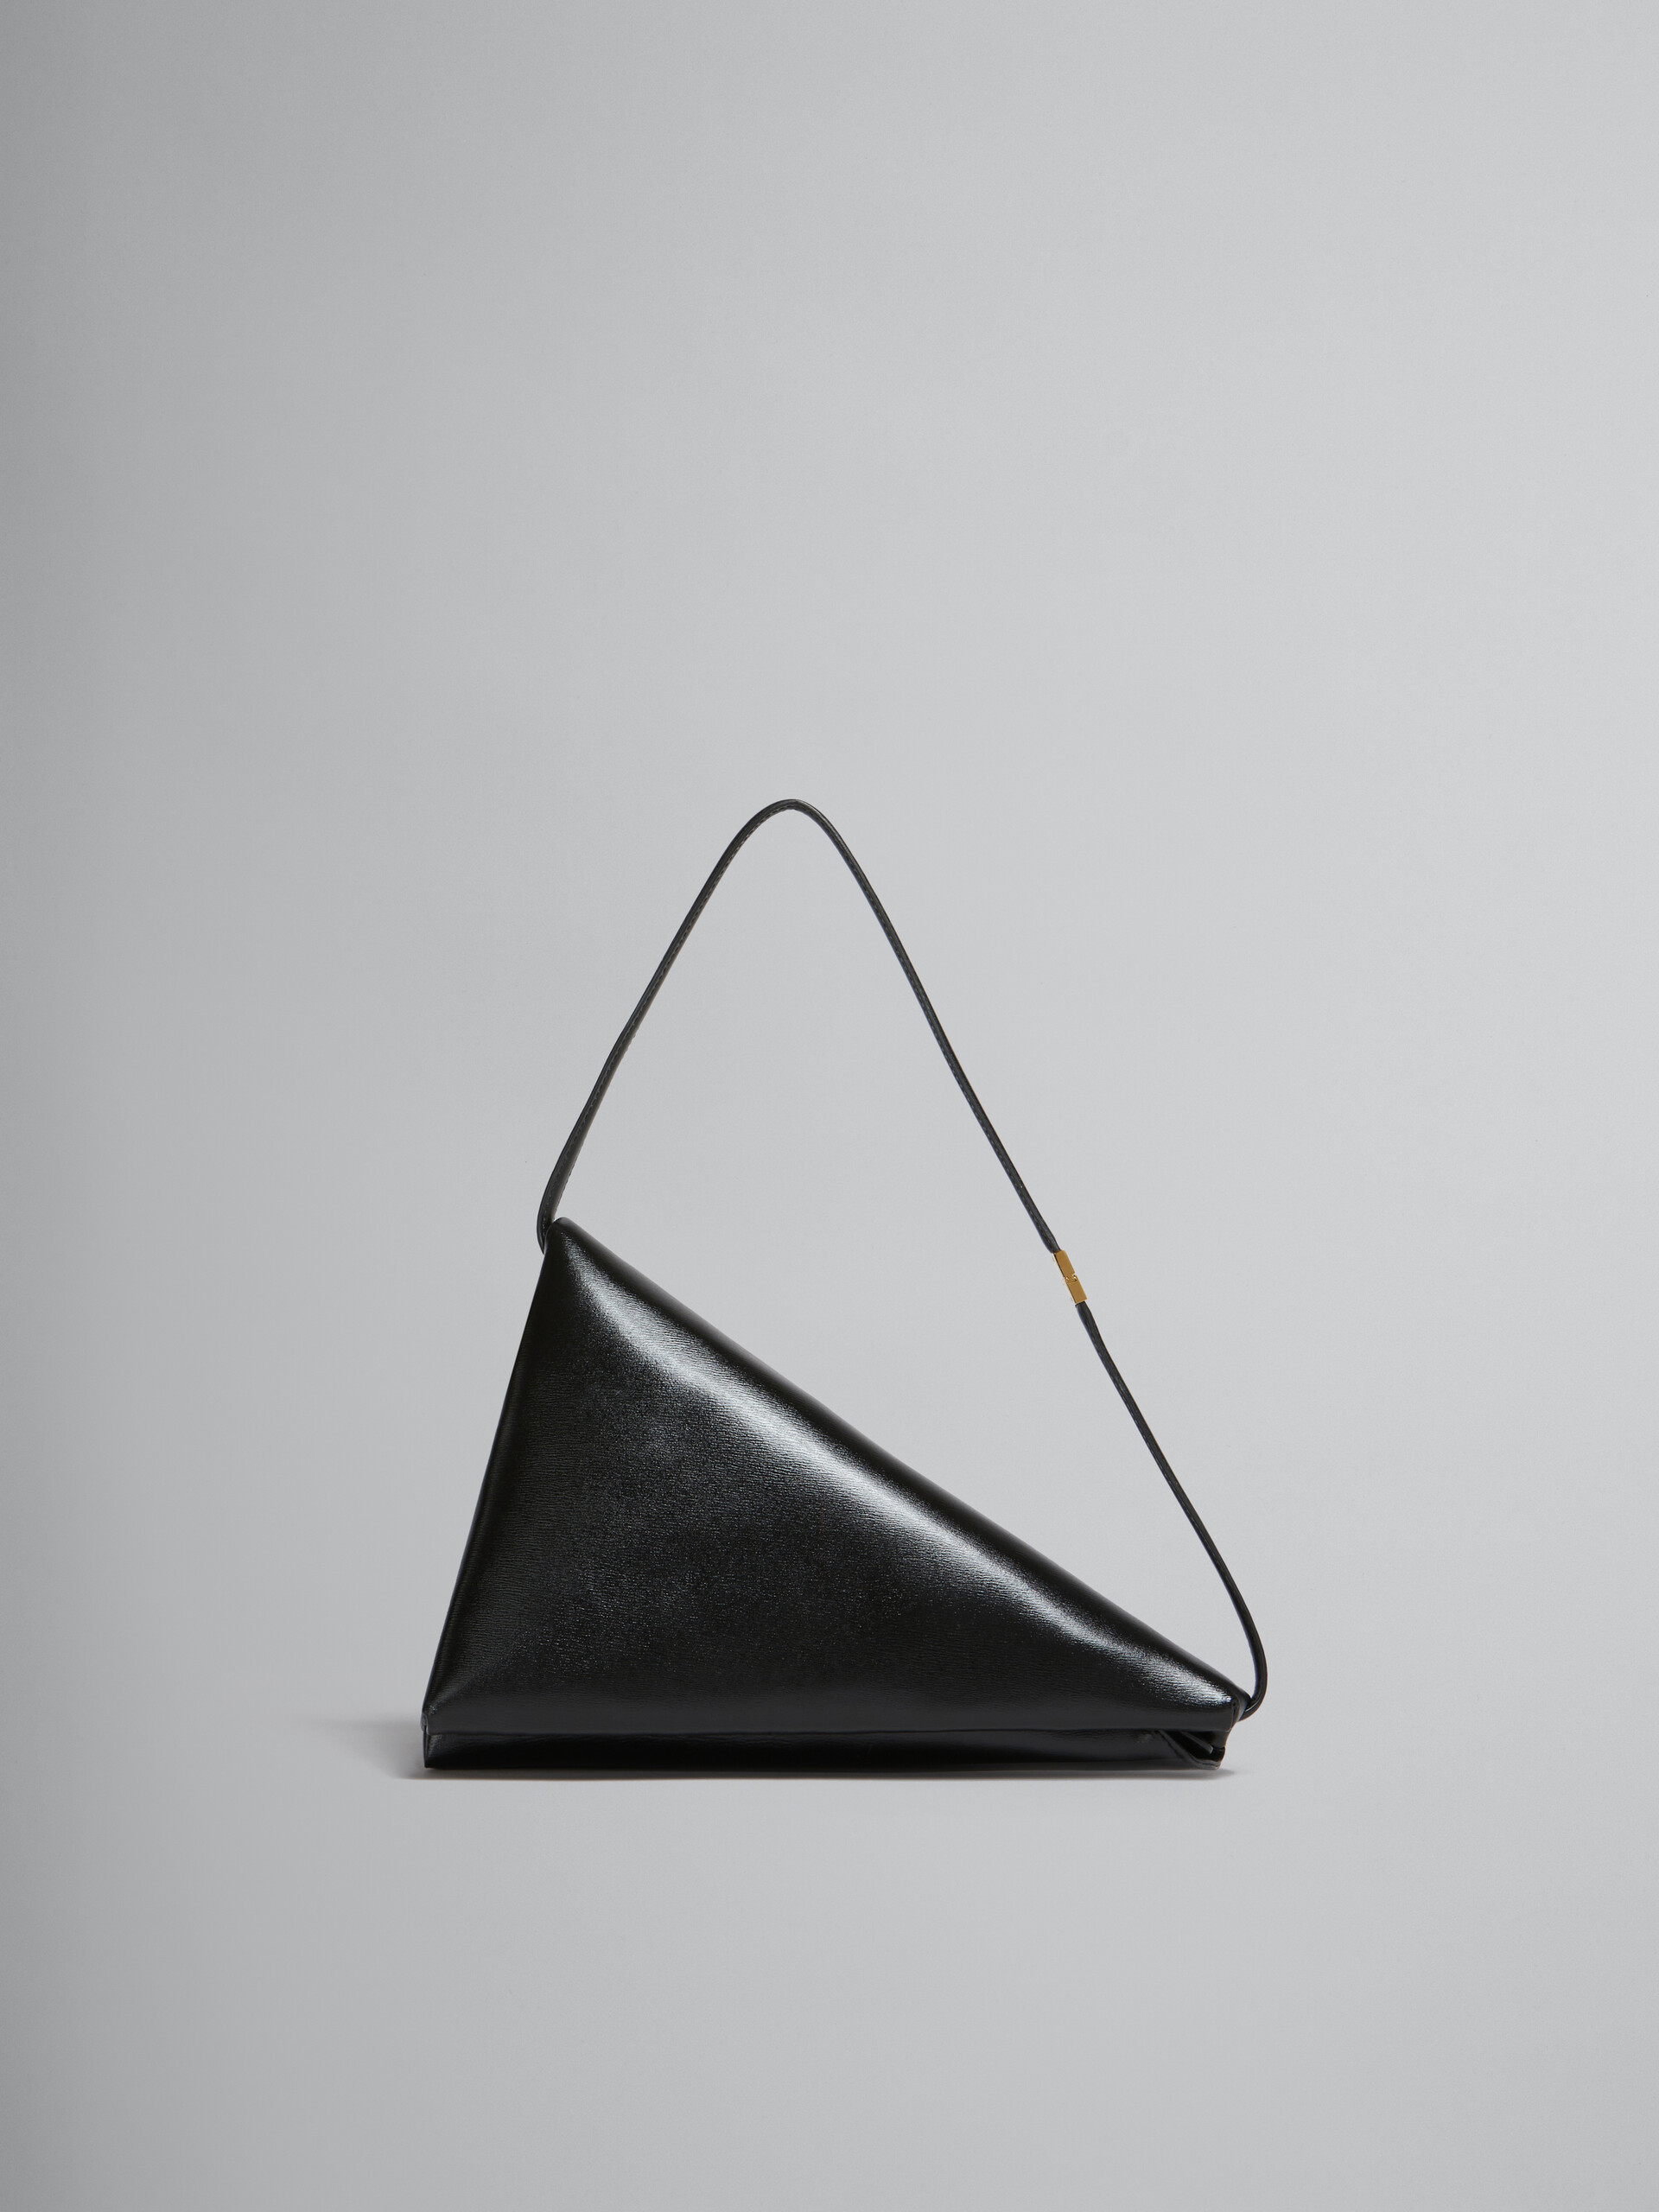 Sac triangulaire Prisma en cuir noir - Sacs portés épaule - Image 1